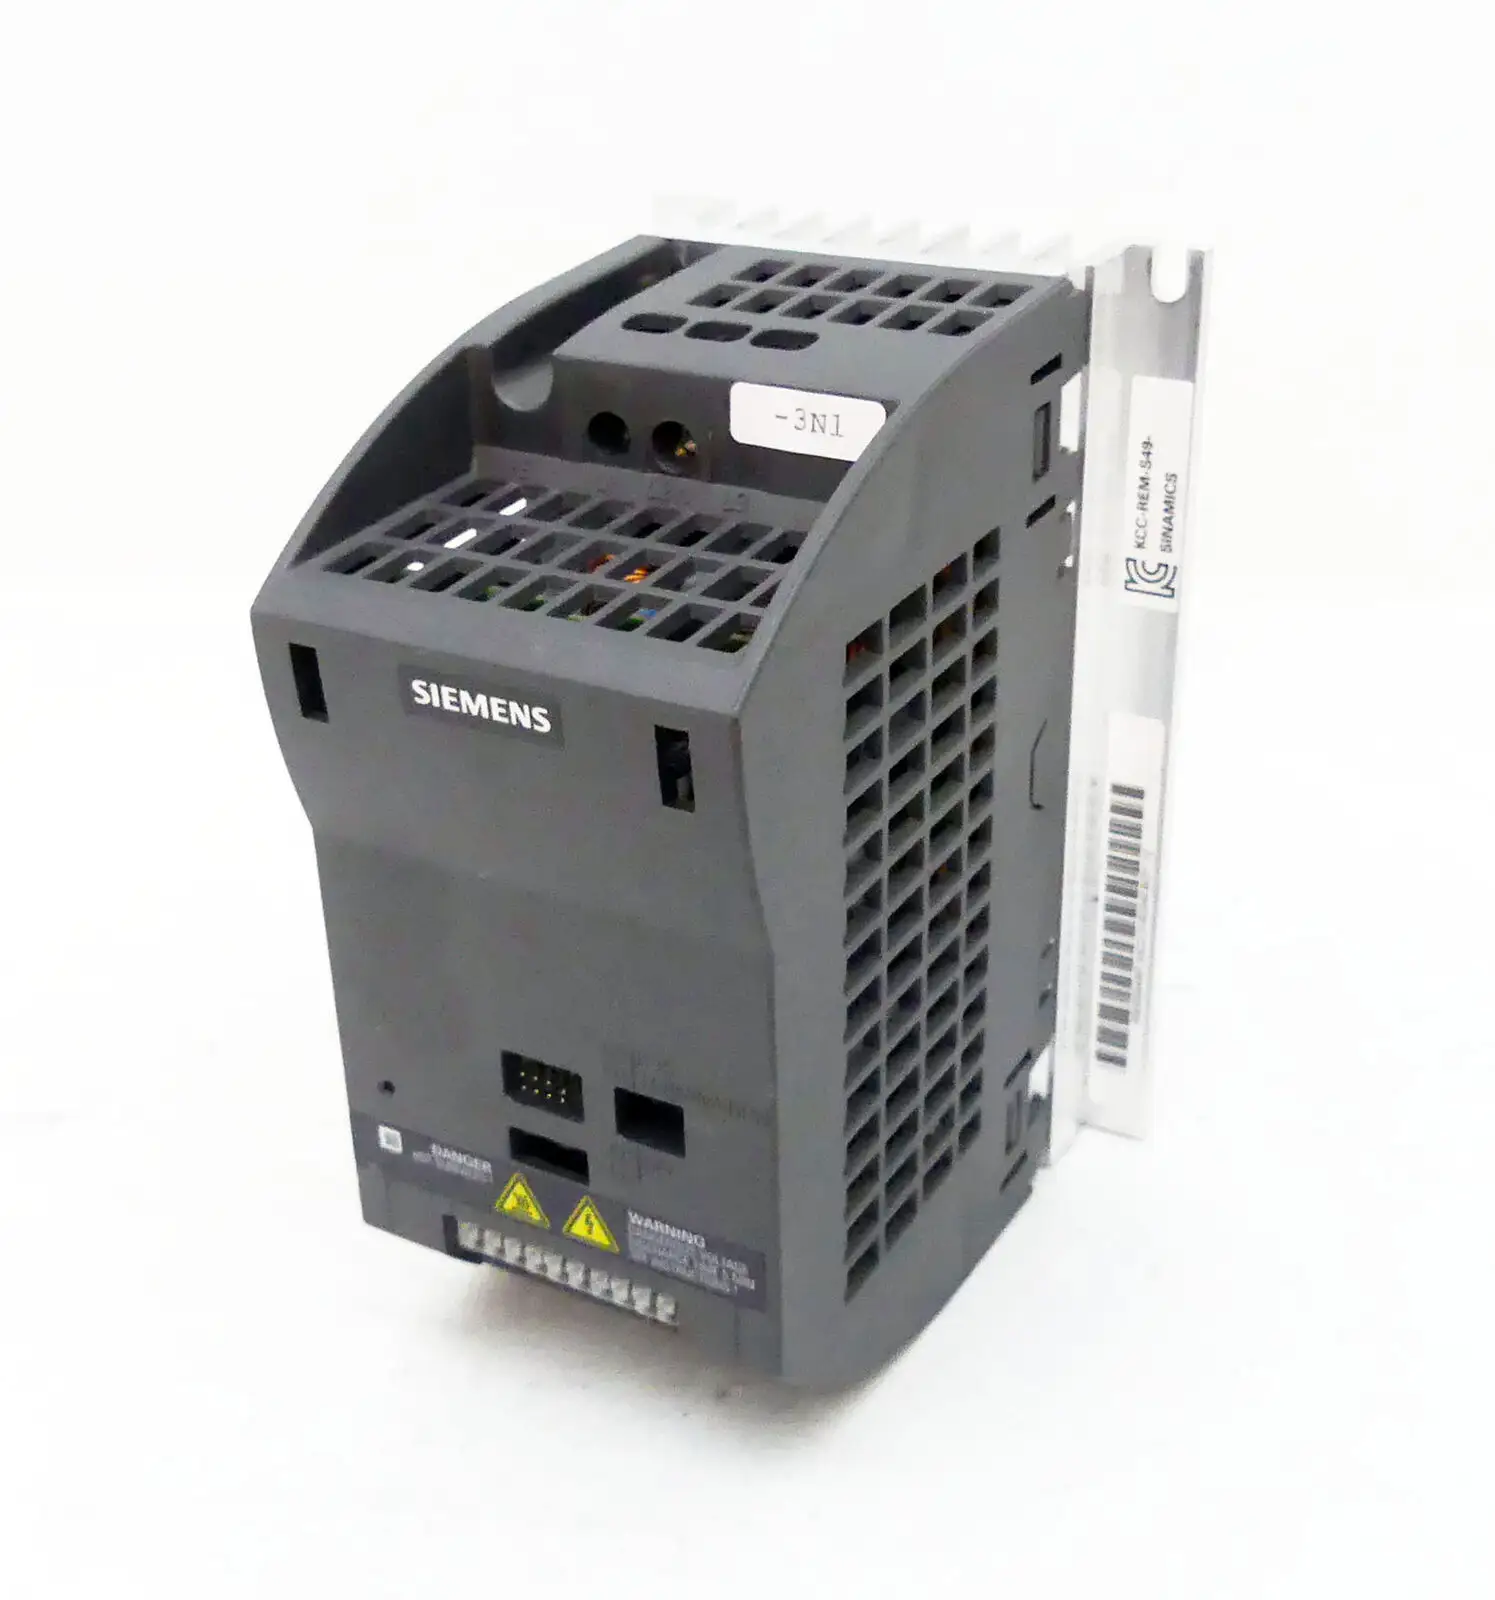 Siemens D'origine 6SL3211-0AB21-5UB1 SINAMICS G110-CPM110 AC lecteur 1.5KW convertisseur de fréquence 6SL3211-0AB21-5AB1